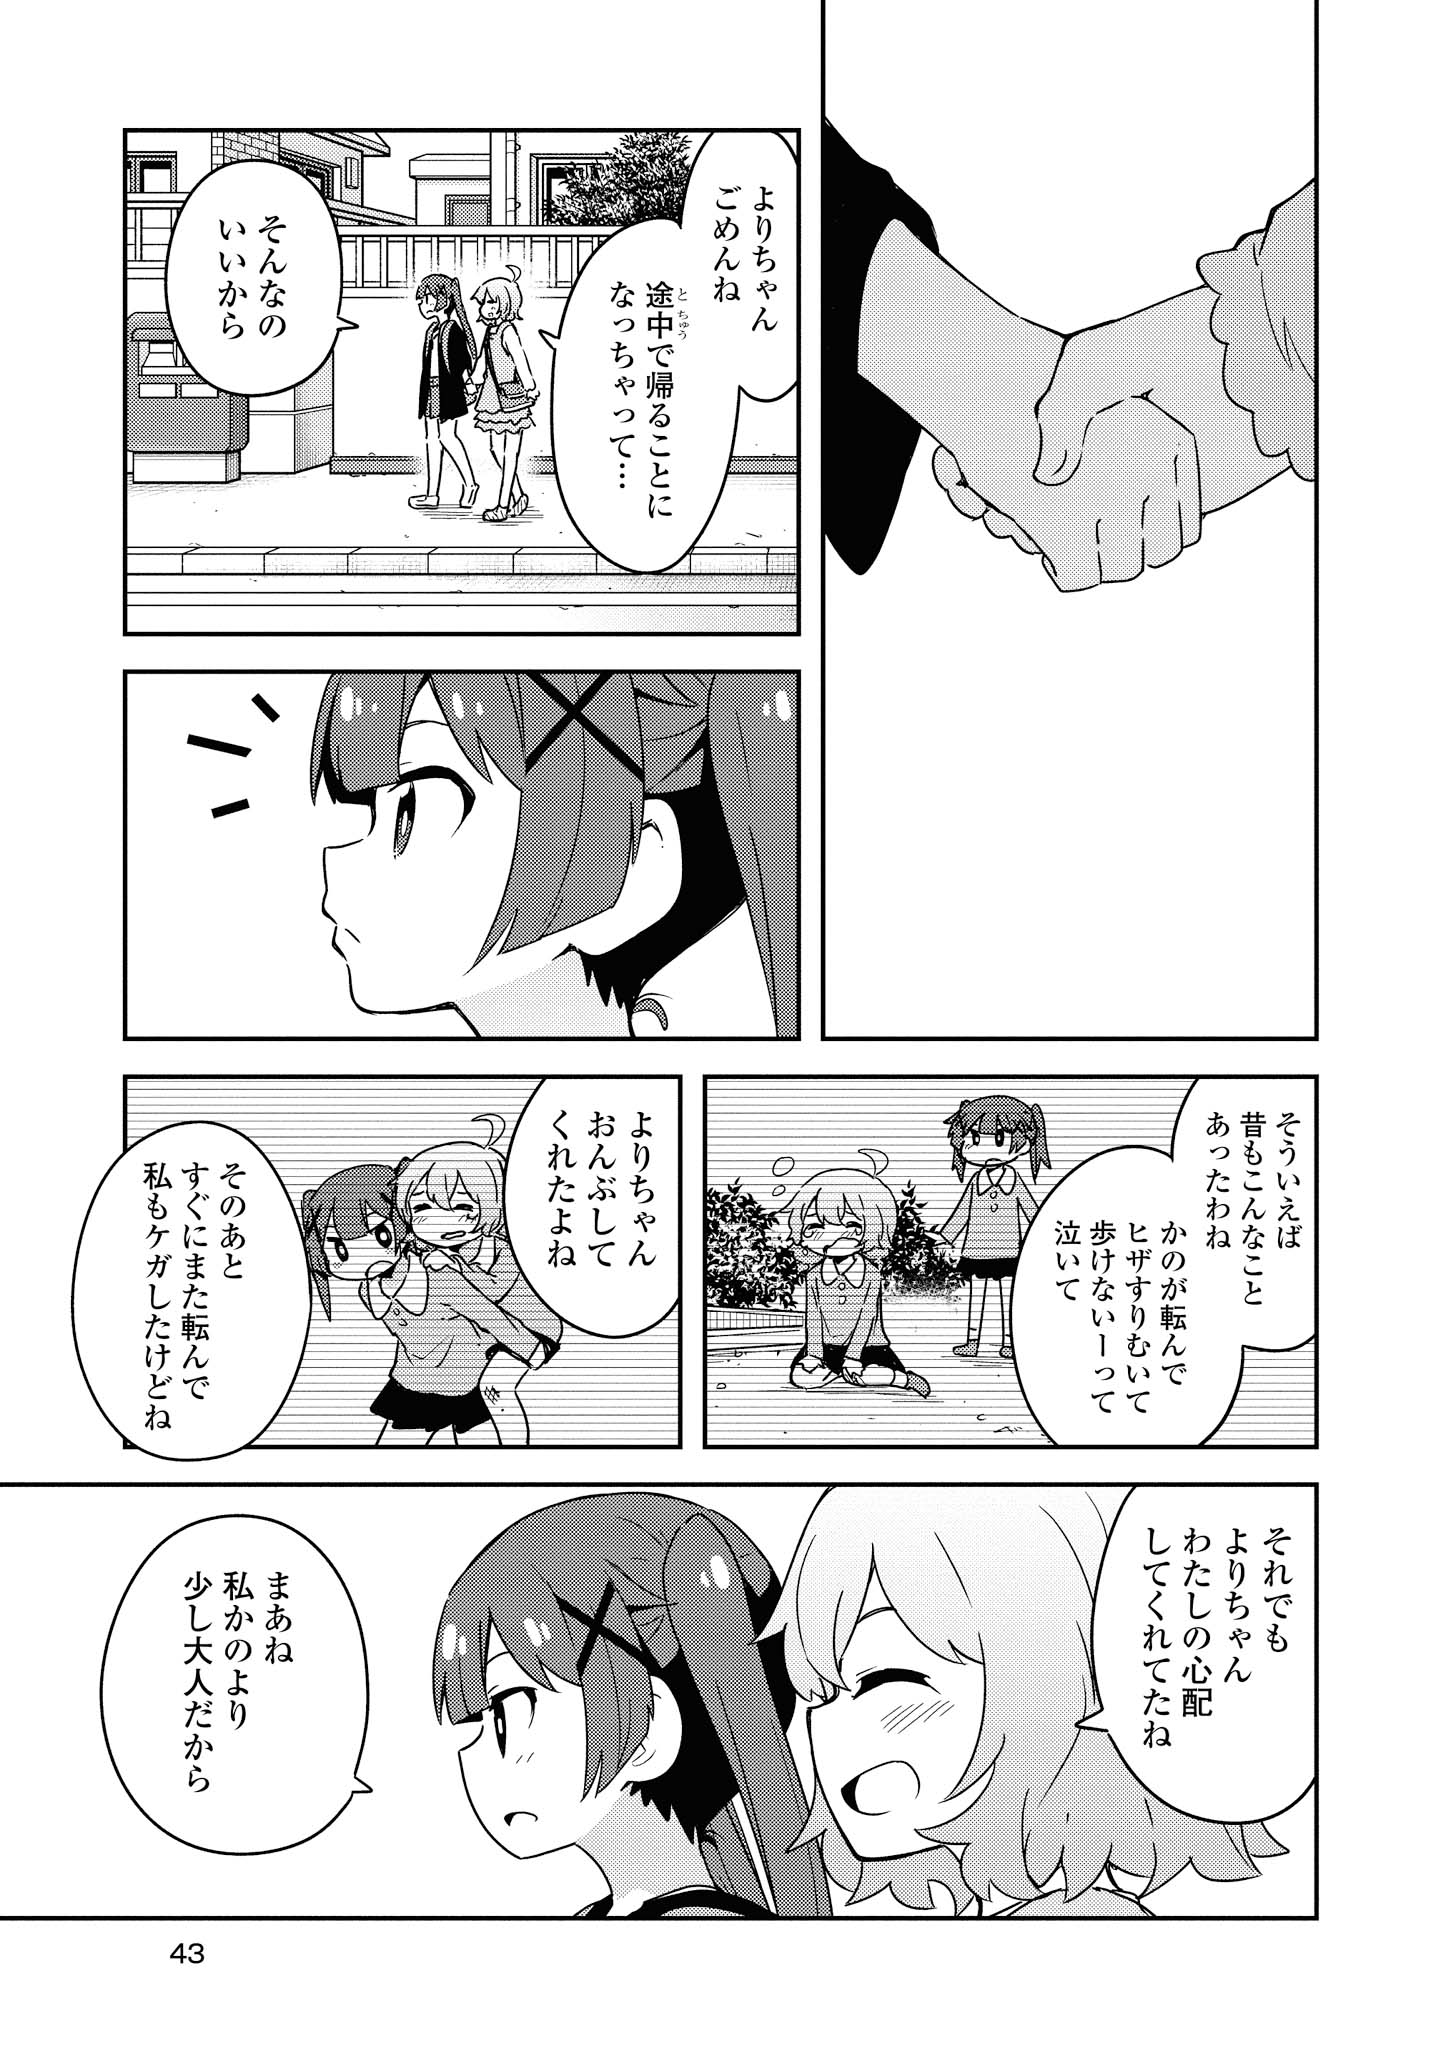 Watashi ni Tenshi ga Maiorita! - Chapter 54 - Page 9